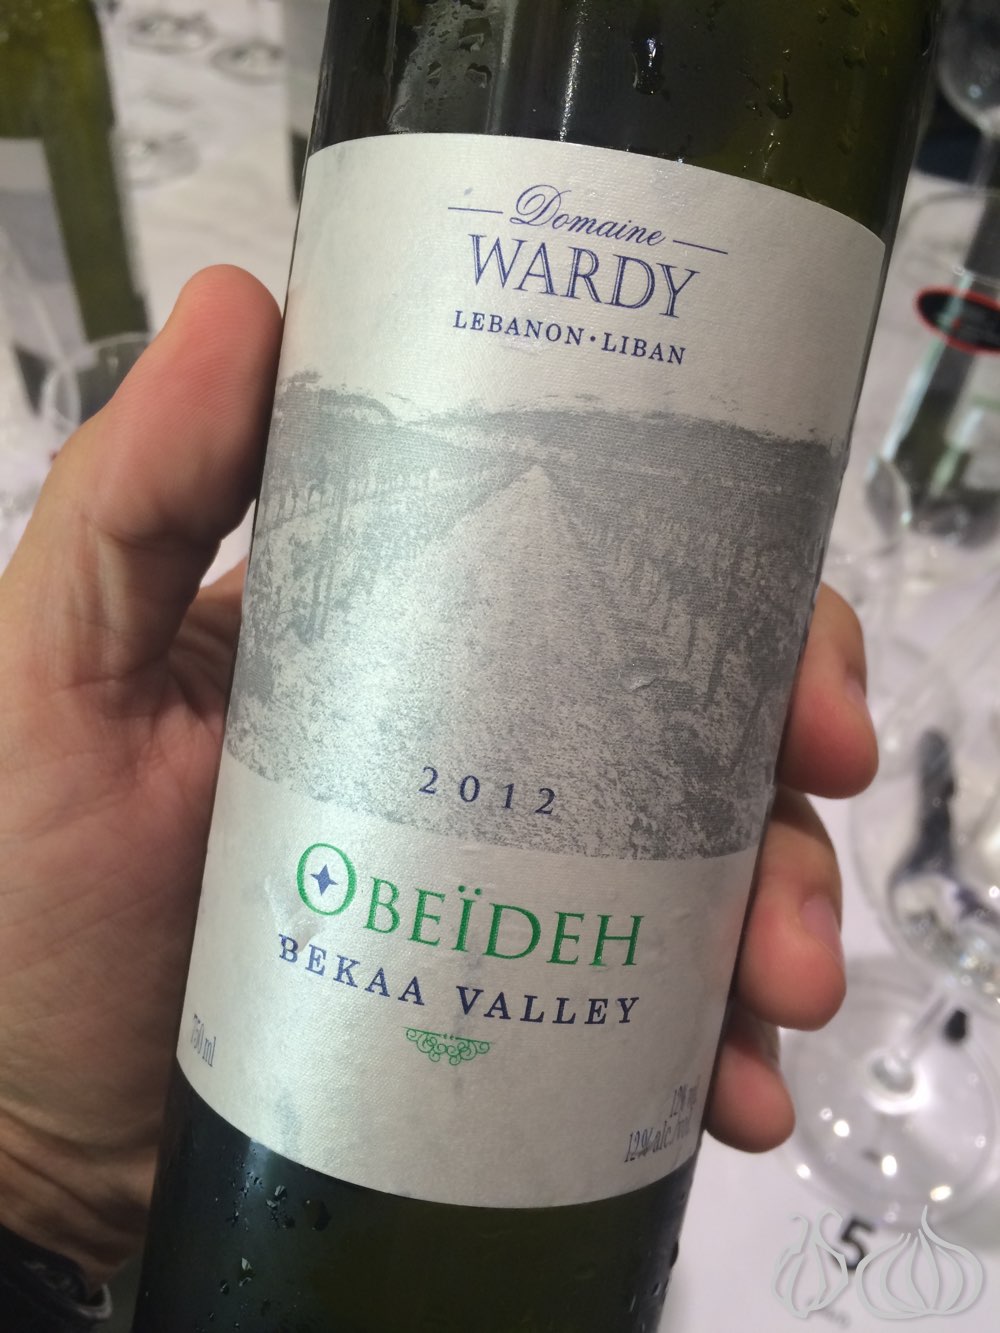 domaine-wardy-obeideh-riedel-riesling-glass122014-11-10-10-52-14